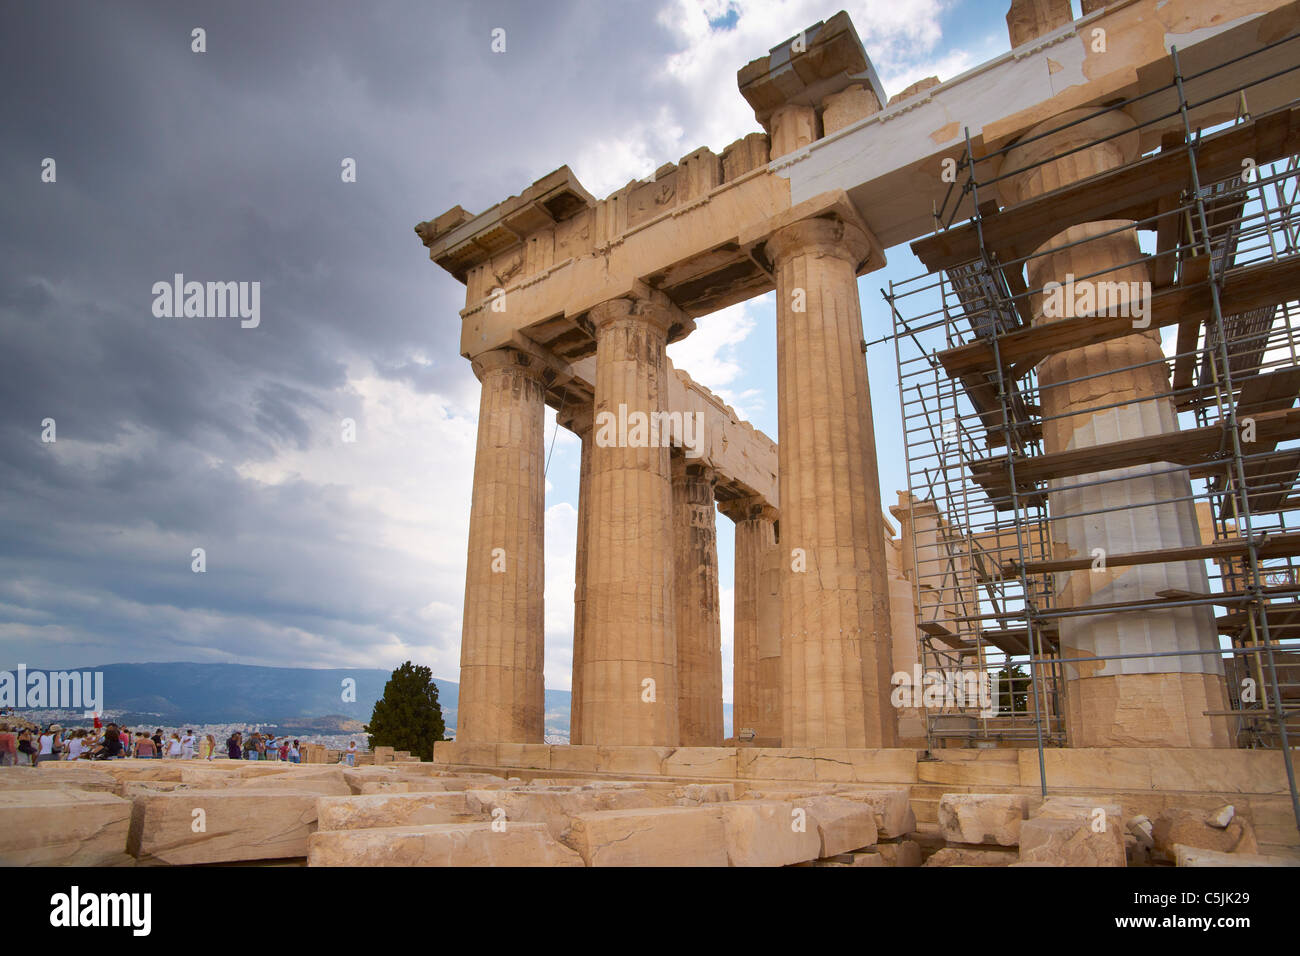 Athens - Acropolis, Parthenon temple, Greece Stock Photo